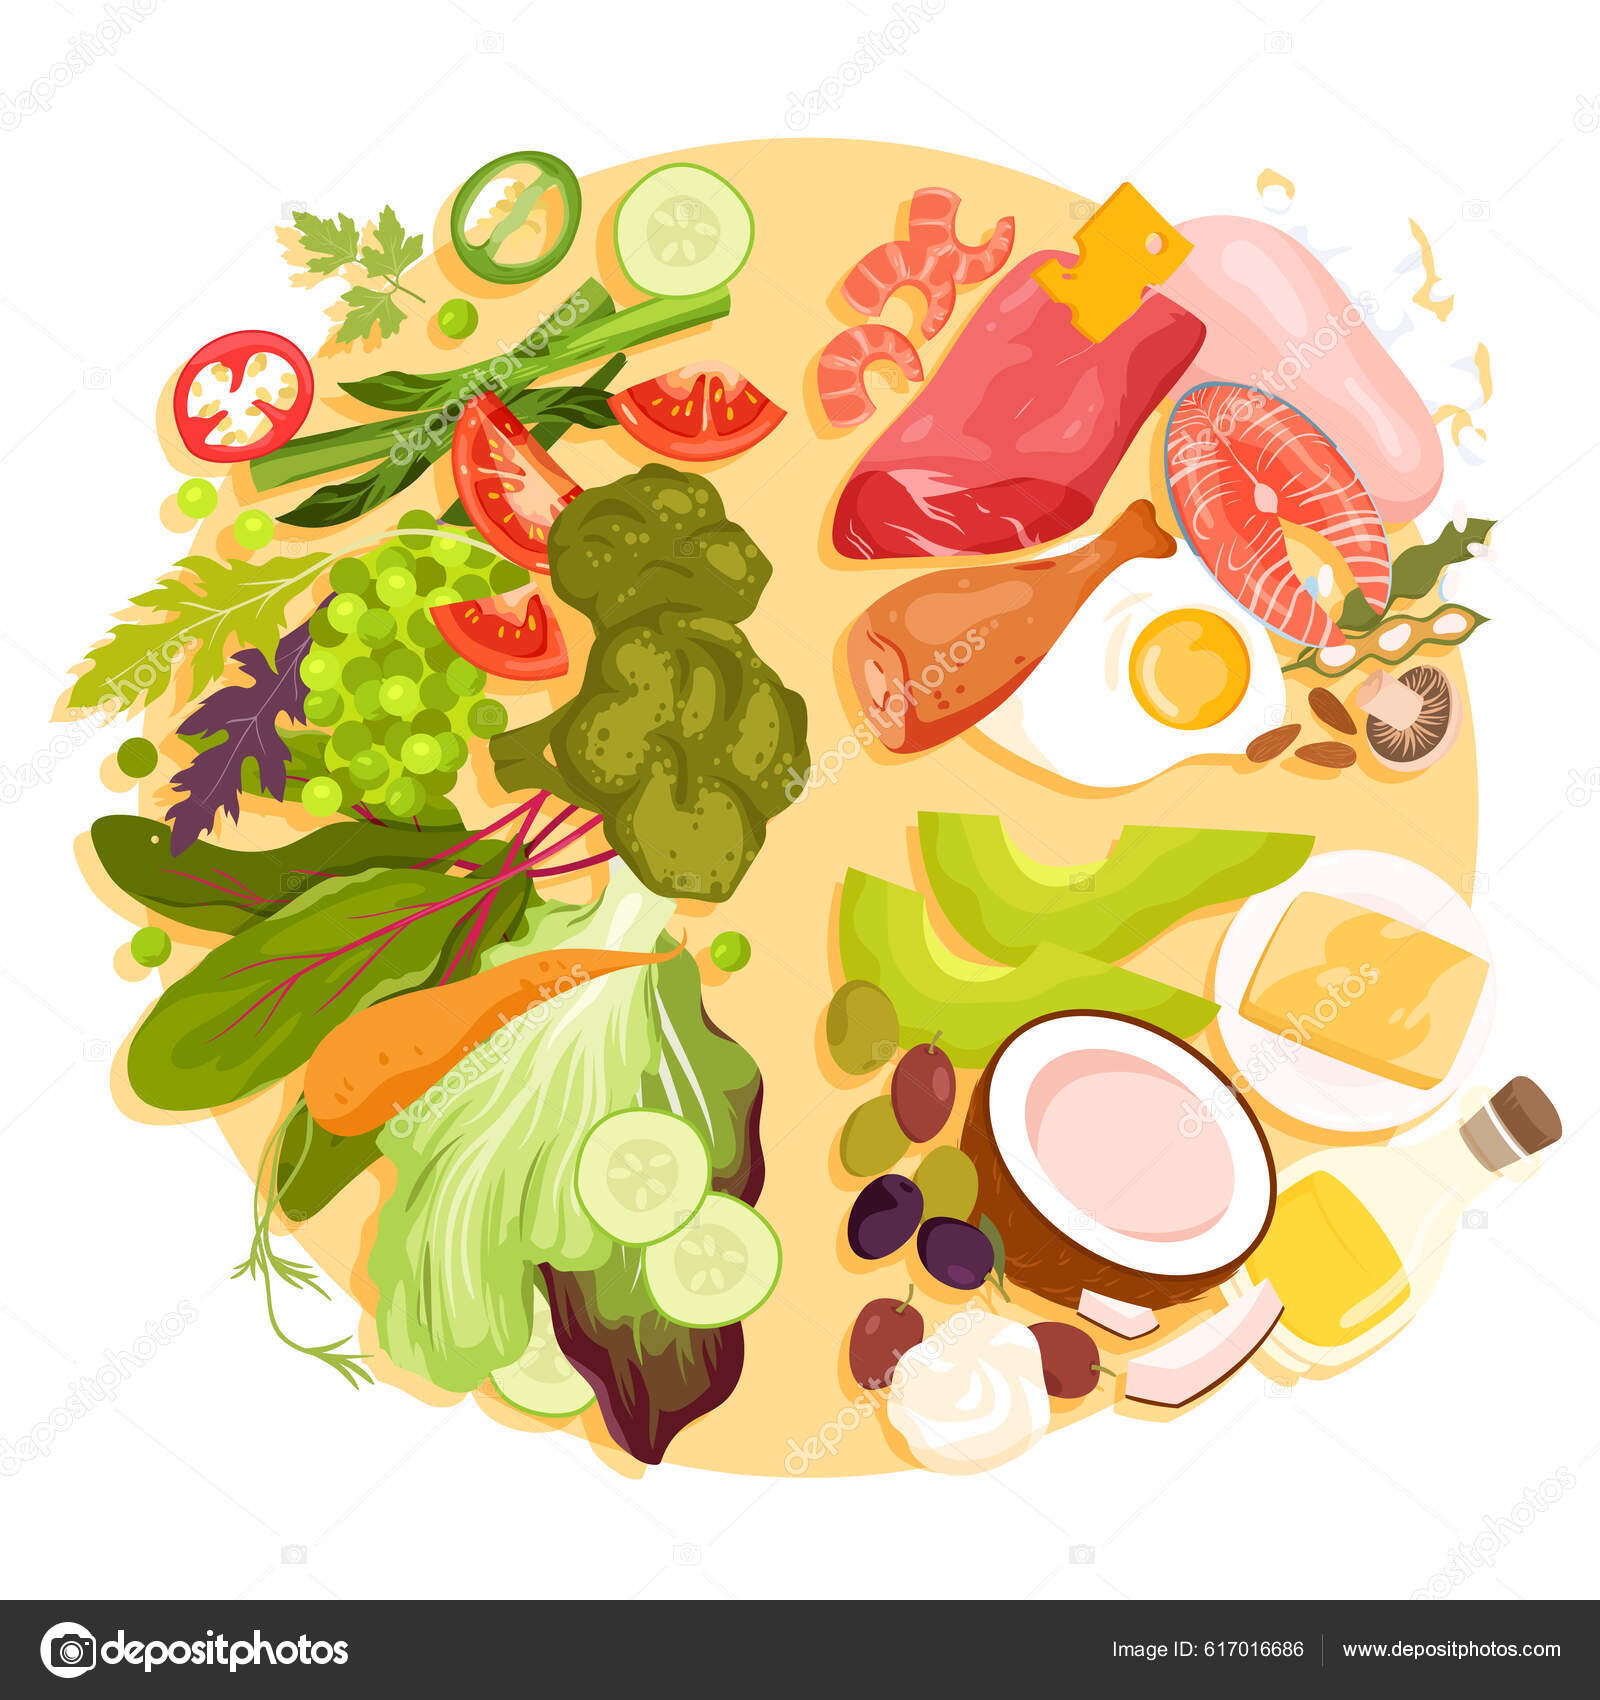 Prato Saudável Equilíbrio Alimentar Conselhos Dietéticos Ilustração  Vetorial Cartoon Isolado vetor(es) de stock de ©Nataliia2910@gmail.com  617016686